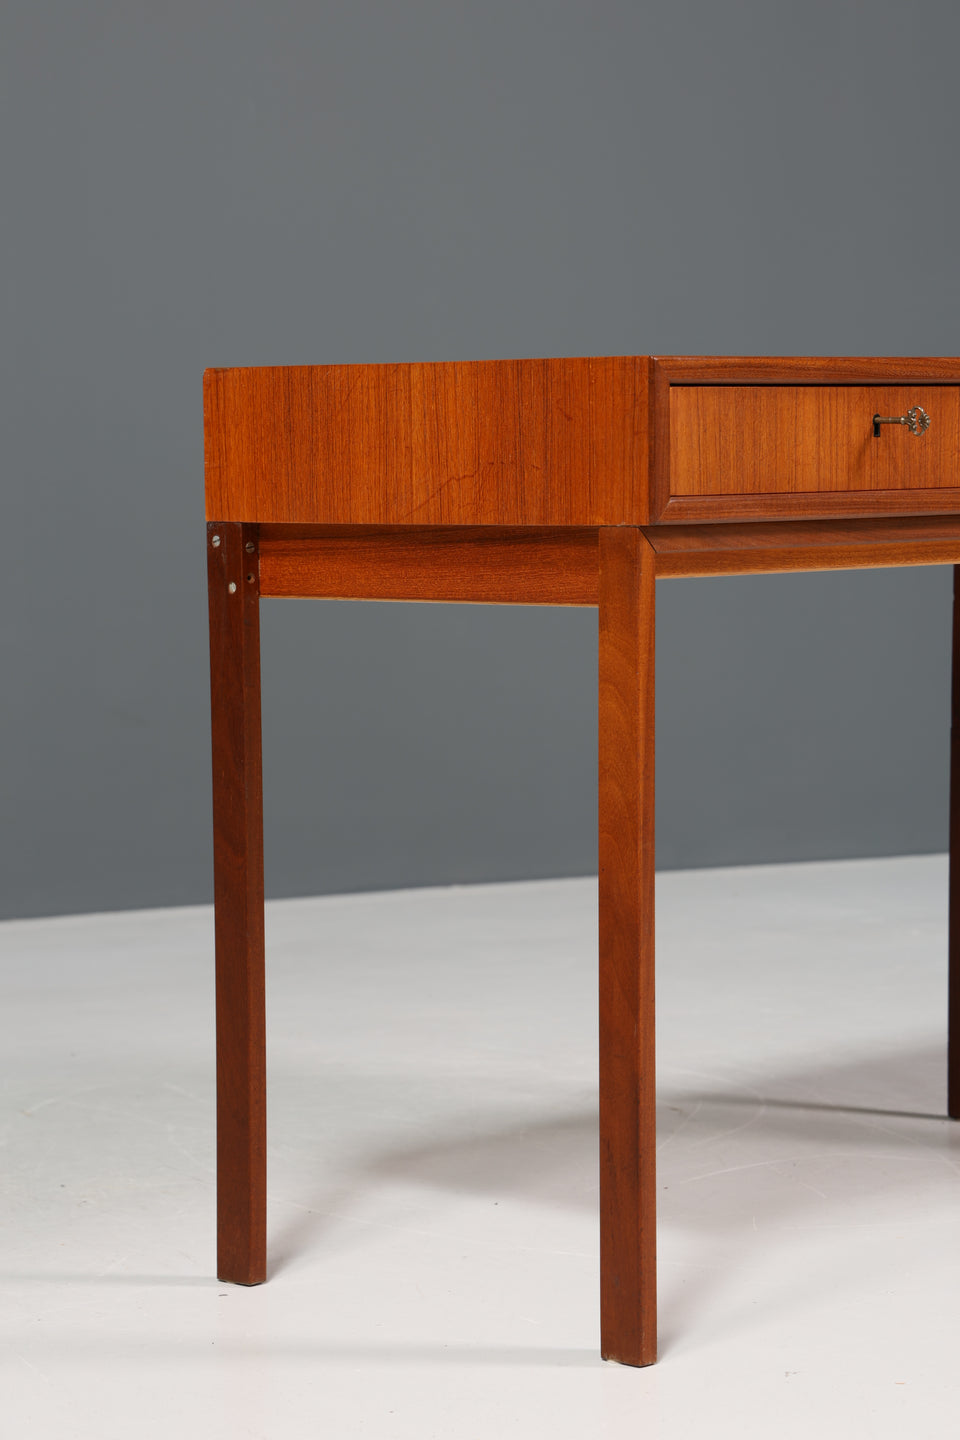 Wunderschöner Schreibtisch "Made in Denmark" Teak Holz 60er Jahre Büro Tisch Desk